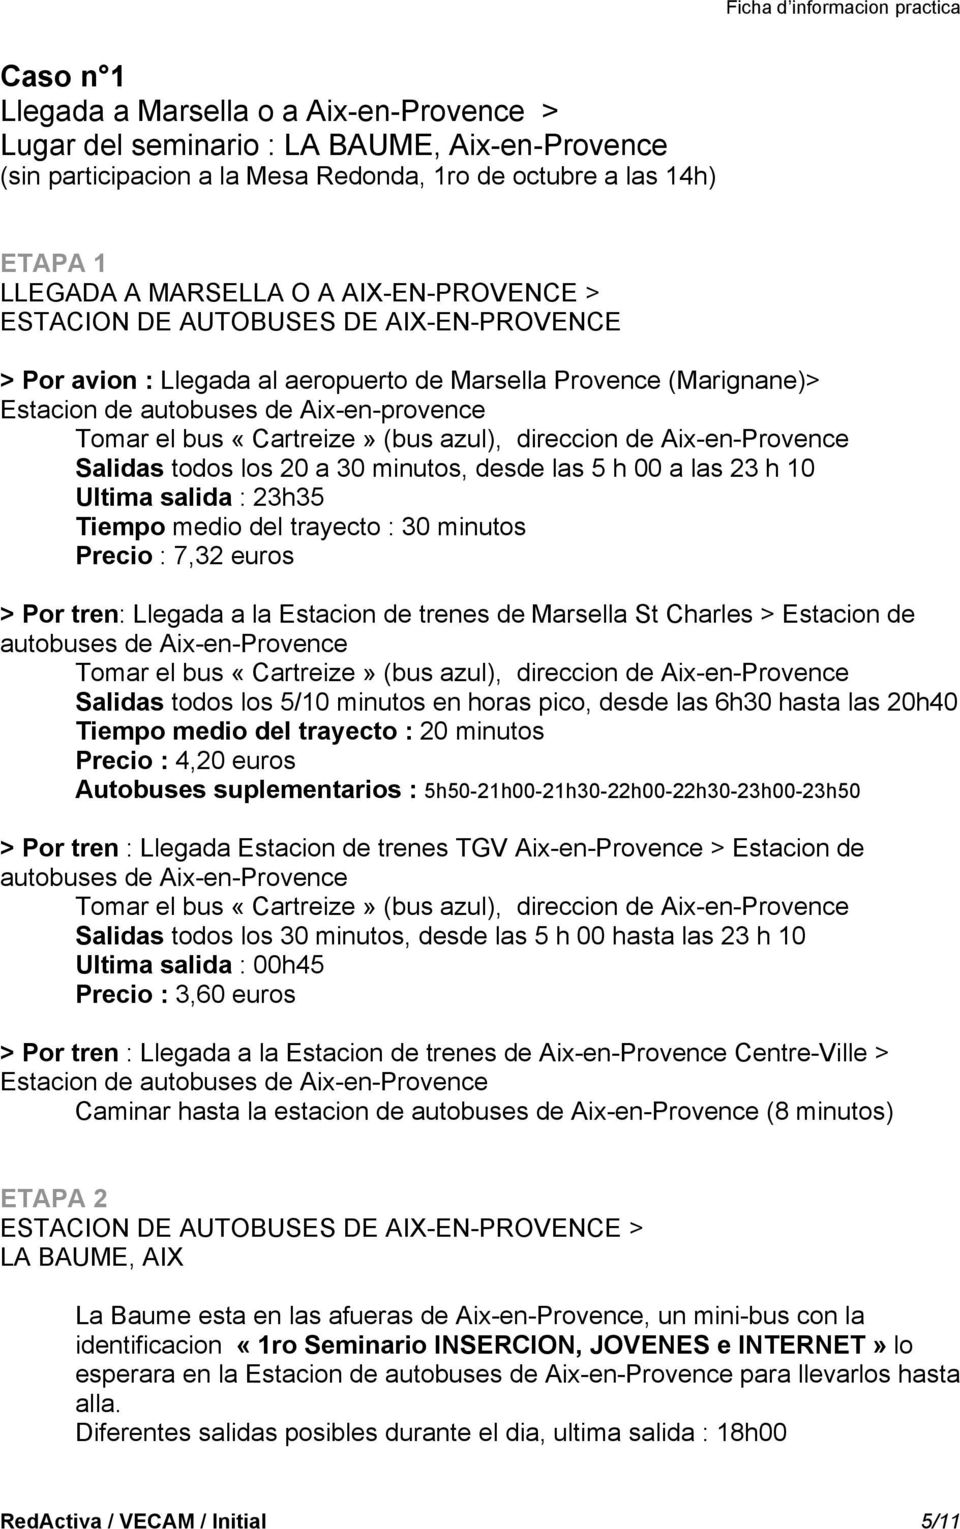 azul), direccion de Aix-en-Provence Salidas todos los 20 a 30 minutos, desde las 5 h 00 a las 23 h 10 Ultima salida : 23h35 Tiempo medio del trayecto : 30 minutos Precio : 7,32 euros > Por tren: